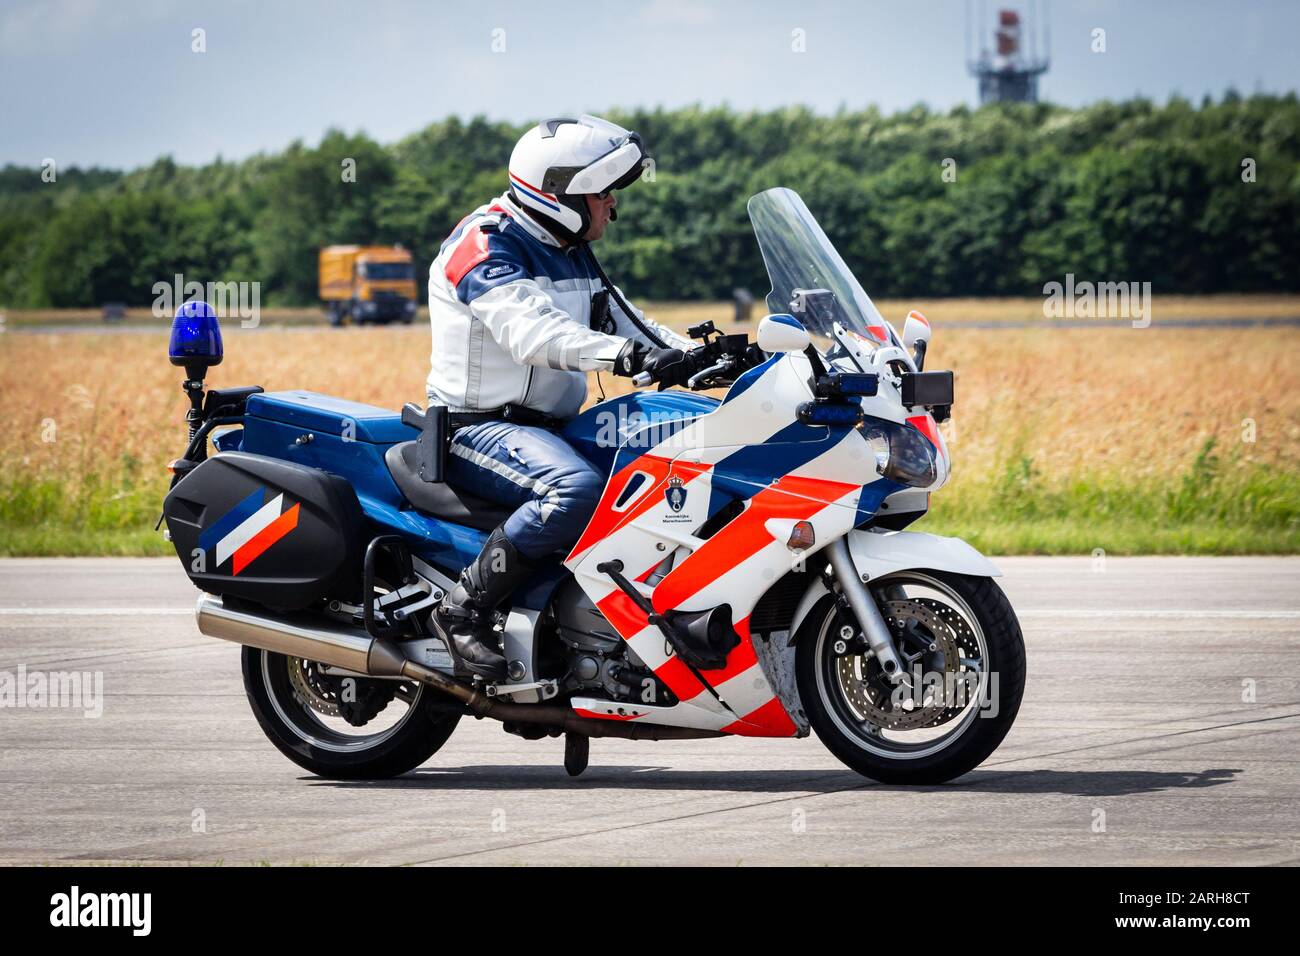 VOLKEL, NIEDERLANDE - Jun 15, 2013: Niederländischer Militärpolizist (Marechaussee) patrouilliert auf Motorrad beim niederländischen Luftwaffentag. Stockfoto